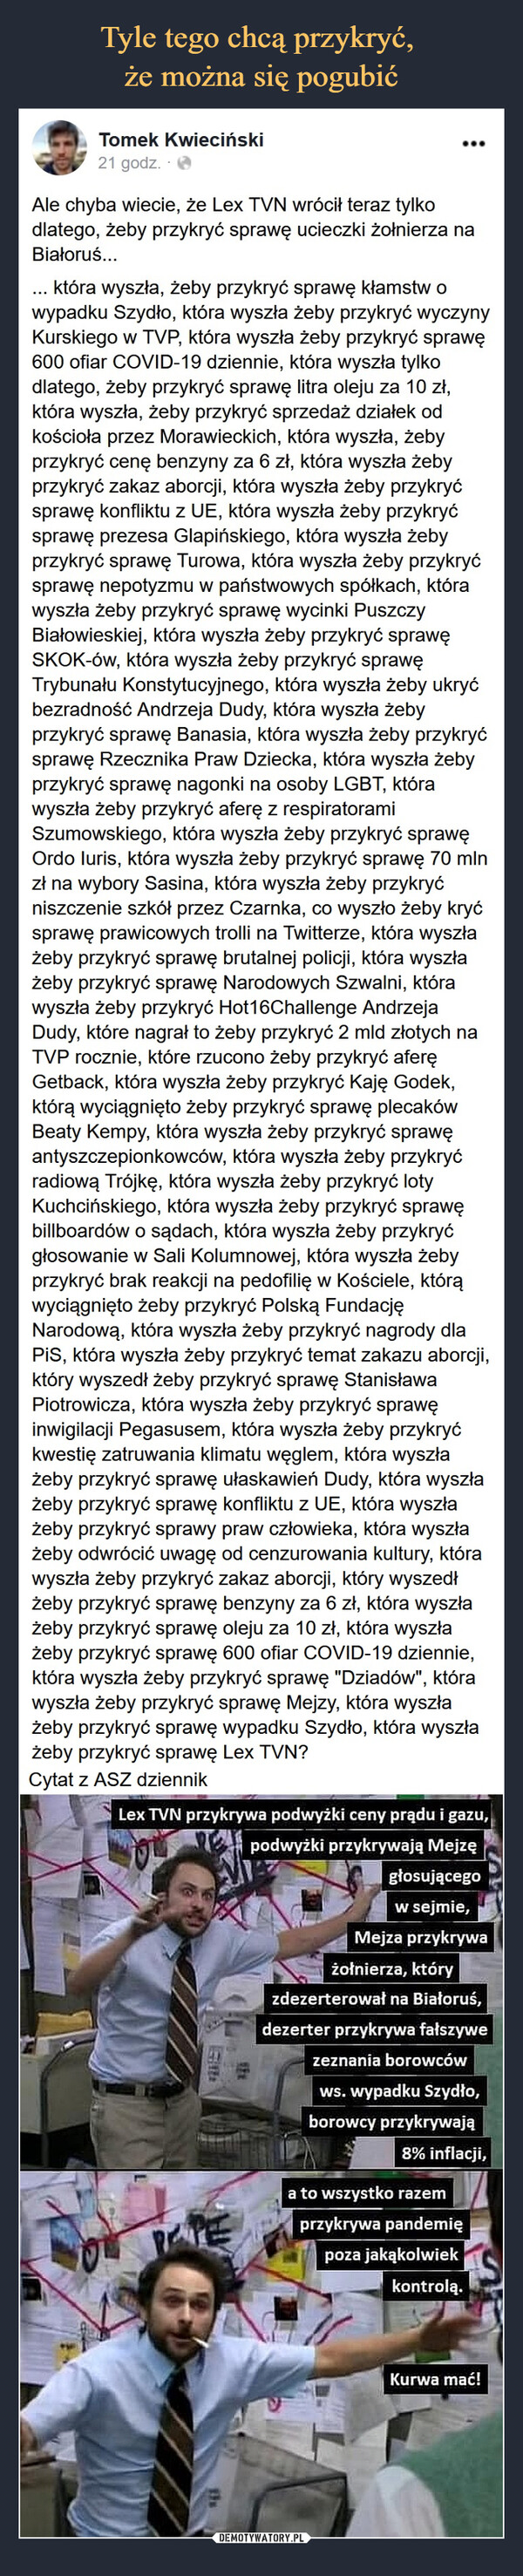  –  Tomek Kwieciński2i5ii911c g7po1dszcuotre.  ·Ale chyba wiecie, że Lex TVN wrócił teraz tylko dlatego, żeby przykryć sprawę ucieczki żołnierza na Białoruś...... która wyszła, żeby przykryć sprawę kłamstw o wypadku Szydło, która wyszła żeby przykryć wyczyny Kurskiego w TVP, która wyszła żeby przykryć sprawę 600 ofiar COVID-19 dziennie, która wyszła tylko dlatego, żeby przykryć sprawę litra oleju za 10 zł, która wyszła, żeby przykryć sprzedaż działek od kościoła przez Morawieckich, która wyszła, żeby przykryć cenę benzyny za 6 zł, która wyszła żeby przykryć zakaz aborcji, która wyszła żeby przykryć sprawę konfliktu z UE, która wyszła żeby przykryć sprawę prezesa Glapińskiego, która wyszła żeby przykryć sprawę Turowa, która wyszła żeby przykryć sprawę nepotyzmu w państwowych spółkach, która wyszła żeby przykryć sprawę wycinki Puszczy Białowieskiej, która wyszła żeby przykryć sprawę SKOK-ów, która wyszła żeby przykryć sprawę Trybunału Konstytucyjnego, która wyszła żeby ukryć bezradność Andrzeja Dudy, która wyszła żeby przykryć sprawę Banasia, która wyszła żeby przykryć sprawę Rzecznika Praw Dziecka, która wyszła żeby przykryć sprawę nagonki na osoby LGBT, która wyszła żeby przykryć aferę z respiratorami Szumowskiego, która wyszła żeby przykryć sprawę Ordo Iuris, która wyszła żeby przykryć sprawę 70 mln zł na wybory Sasina, która wyszła żeby przykryć niszczenie szkół przez Czarnka, co wyszło żeby kryć sprawę prawicowych trolli na Twitterze, która wyszła żeby przykryć sprawę brutalnej policji, która wyszła żeby przykryć sprawę Narodowych Szwalni, która wyszła żeby przykryć Hot16Challenge Andrzeja Dudy, które nagrał to żeby przykryć 2 mld złotych na TVP rocznie, które rzucono żeby przykryć aferę Getback, która wyszła żeby przykryć Kaję Godek, którą wyciągnięto żeby przykryć sprawę plecaków Beaty Kempy, która wyszła żeby przykryć sprawę antyszczepionkowców, która wyszła żeby przykryć radiową Trójkę, która wyszła żeby przykryć loty Kuchcińskiego, która wyszła żeby przykryć sprawę billboardów o sądach, która wyszła żeby przykryć głosowanie w Sali Kolumnowej, która wyszła żeby przykryć brak reakcji na pedofilię w Kościele, którą wyciągnięto żeby przykryć Polską Fundację Narodową, która wyszła żeby przykryć nagrody dla PiS, która wyszła żeby przykryć temat zakazu aborcji, który wyszedł żeby przykryć sprawę Stanisława Piotrowicza, która wyszła żeby przykryć sprawę inwigilacji Pegasusem, która wyszła żeby przykryć kwestię zatruwania klimatu węglem, która wyszła żeby przykryć sprawę ułaskawień Dudy, która wyszła żeby przykryć sprawę konfliktu z UE, która wyszła żeby przykryć sprawy praw człowieka, która wyszła żeby odwrócić uwagę od cenzurowania kultury, która wyszła żeby przykryć zakaz aborcji, który wyszedł żeby przykryć sprawę benzyny za 6 zł, która wyszła żeby przykryć sprawę oleju za 10 zł, która wyszła żeby przykryć sprawę 600 ofiar COVID-19 dziennie, która wyszła żeby przykryć sprawę "Dziadów", która wyszła żeby przykryć sprawę Mejzy, która wyszła żeby przykryć sprawę wypadku Szydło, która wyszła żeby przykryć sprawę Lex TVN?Cytat z ASZ dziennik